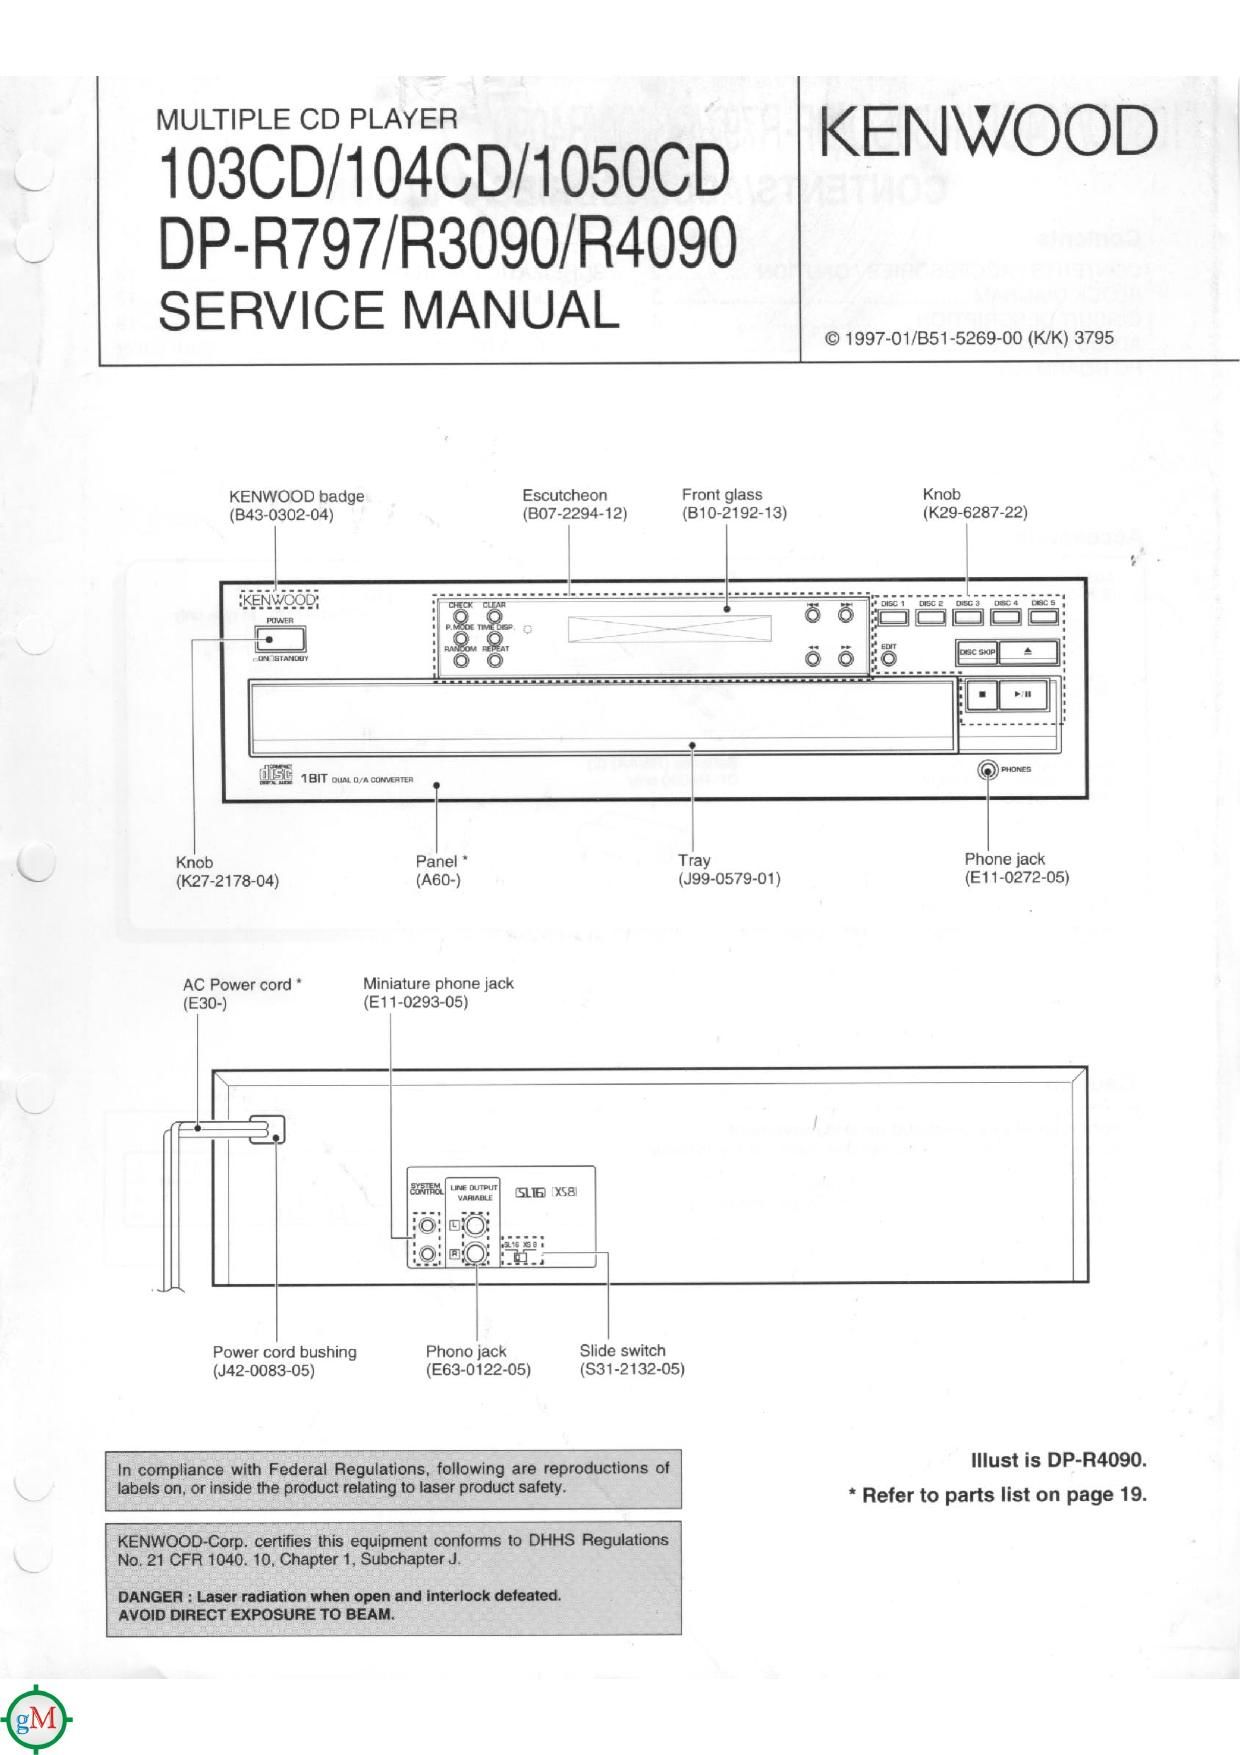 Kenwood DPR 3090 Service Manual